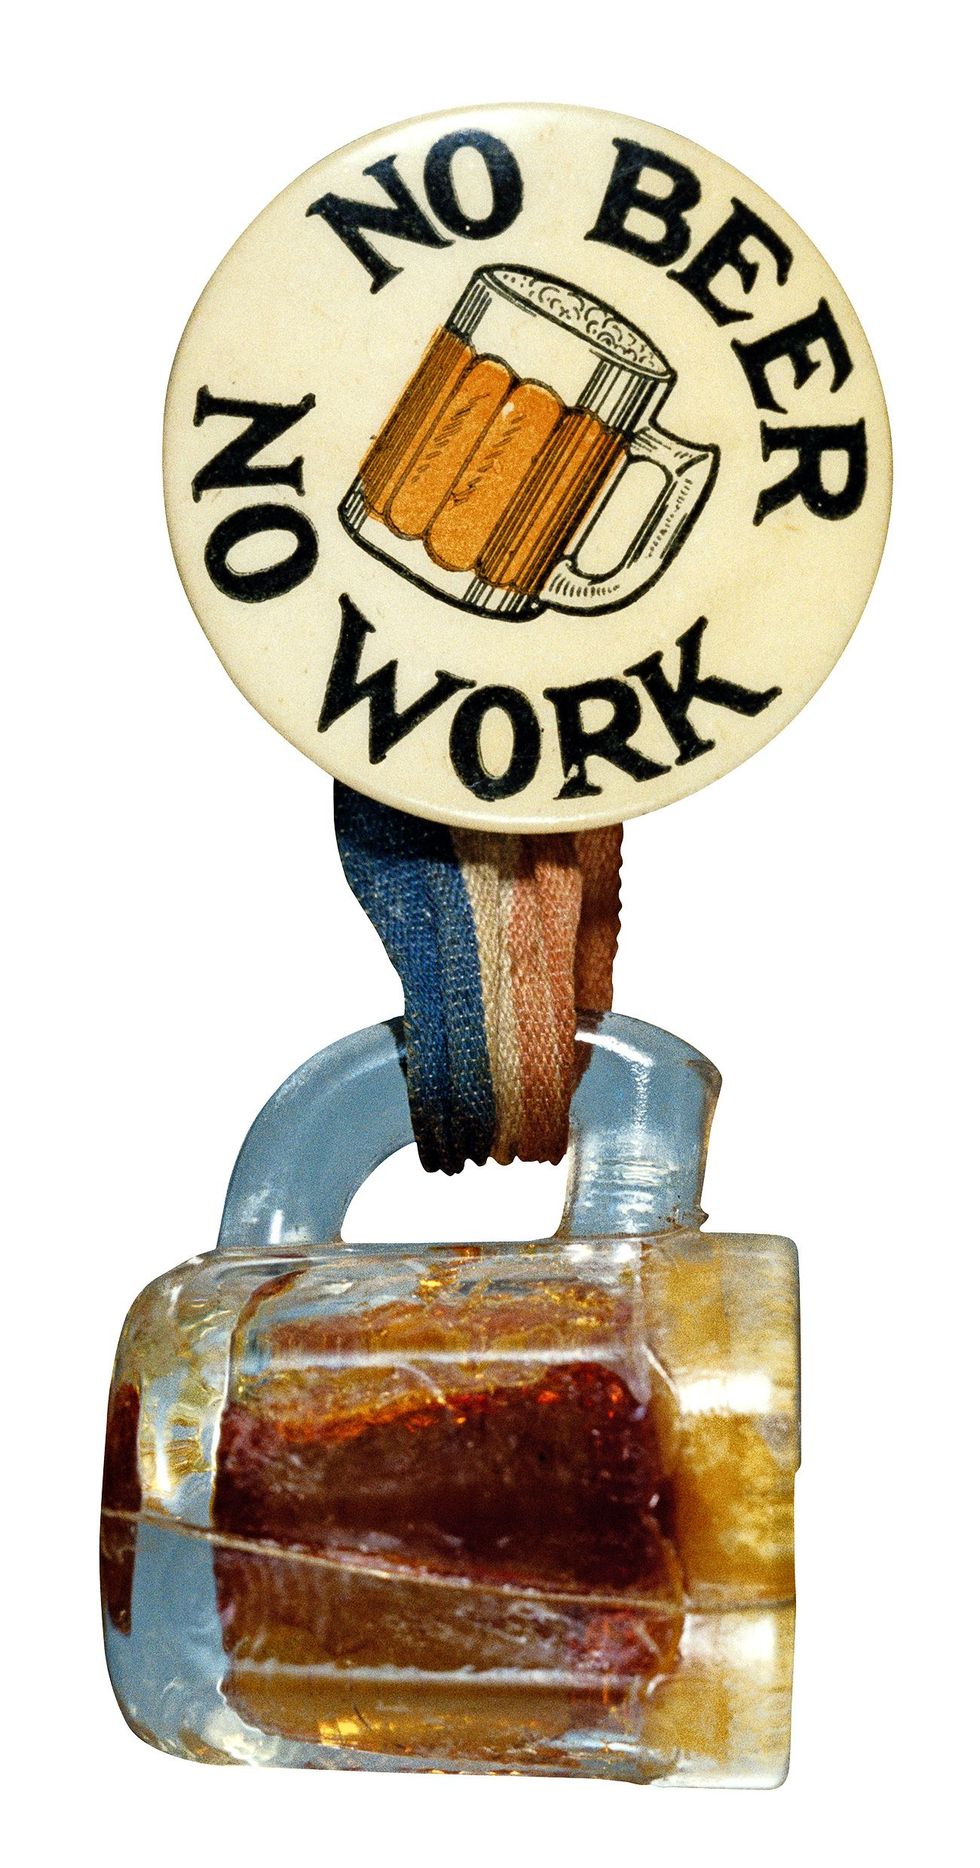 Een van de argumenten tegen de drooglegging was dat er miljoenen banen zouden verdwijnen Zonder bier geen werk staat op deze badge